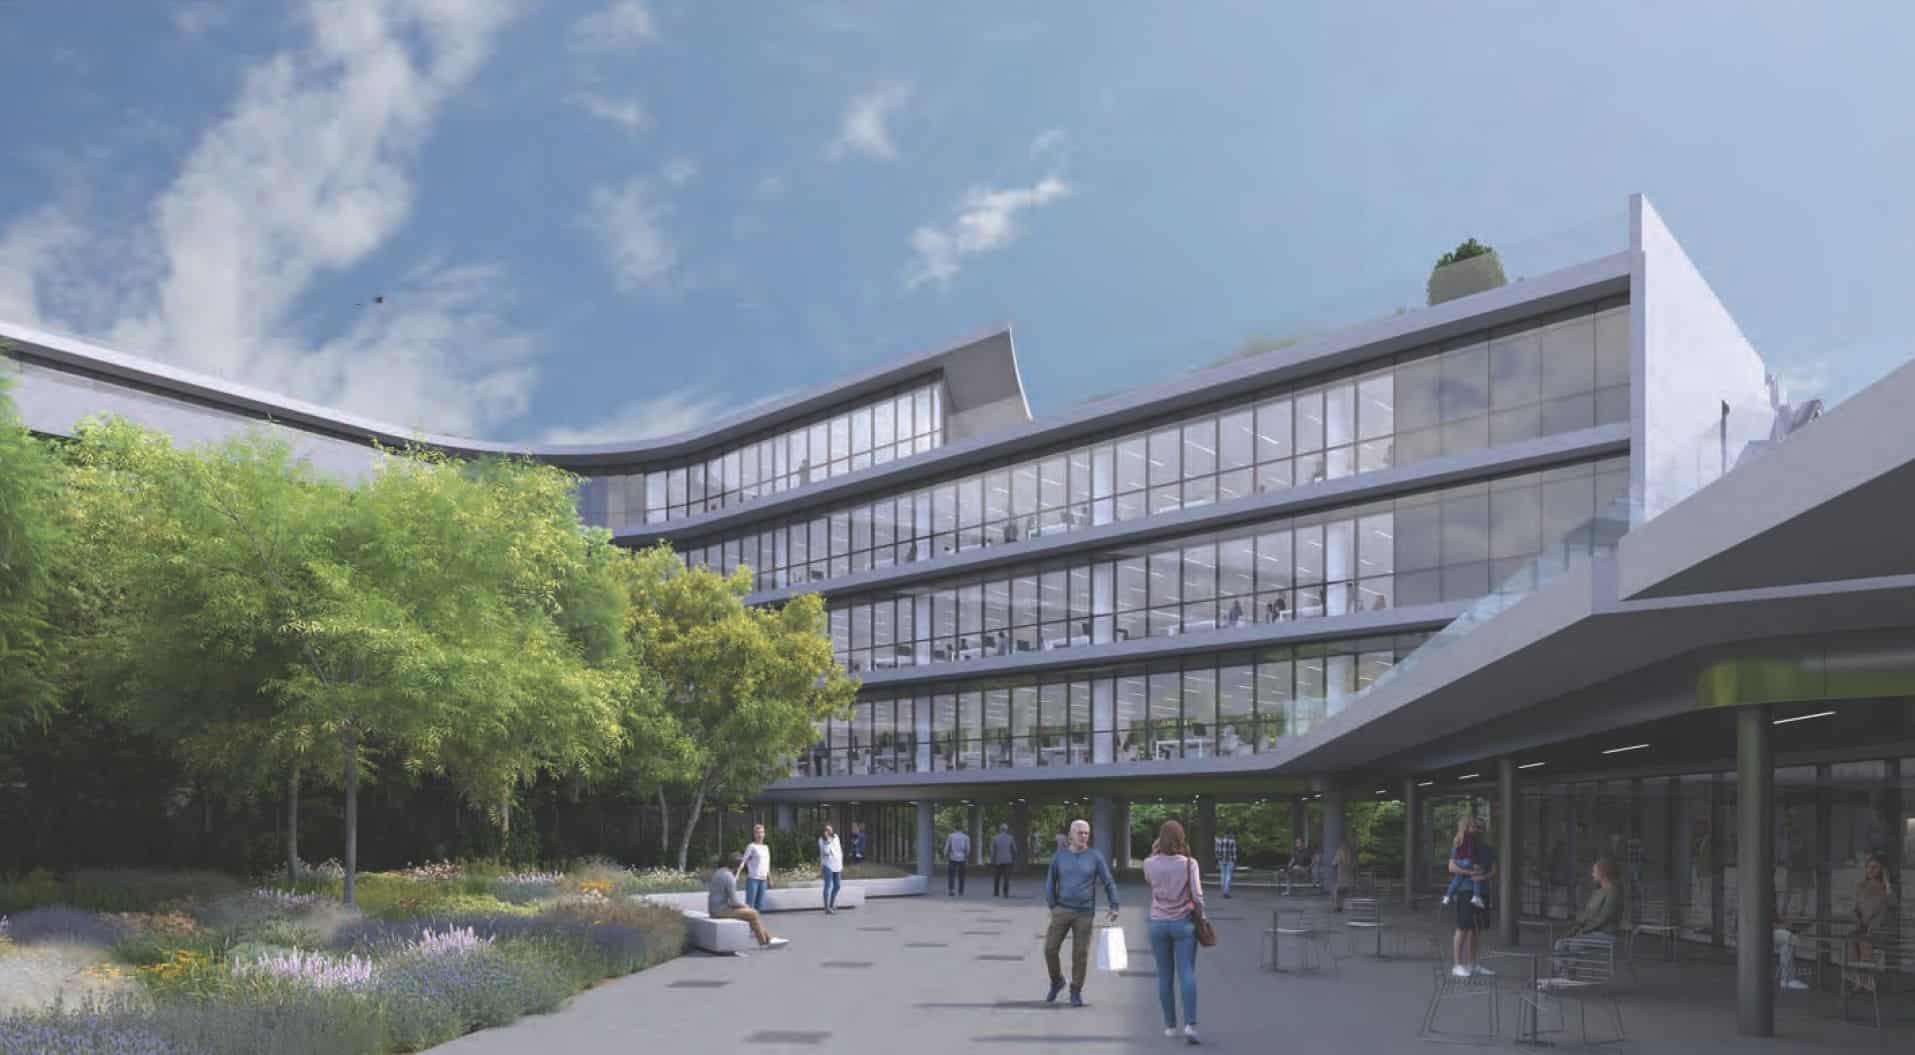 Το νέο βιοκλιματικό κτίριο γραφείων The Element, της Prodea στο Μαρούσι - Πηγή: Prodea Investments / SPARCH / 3D by cad monkeys